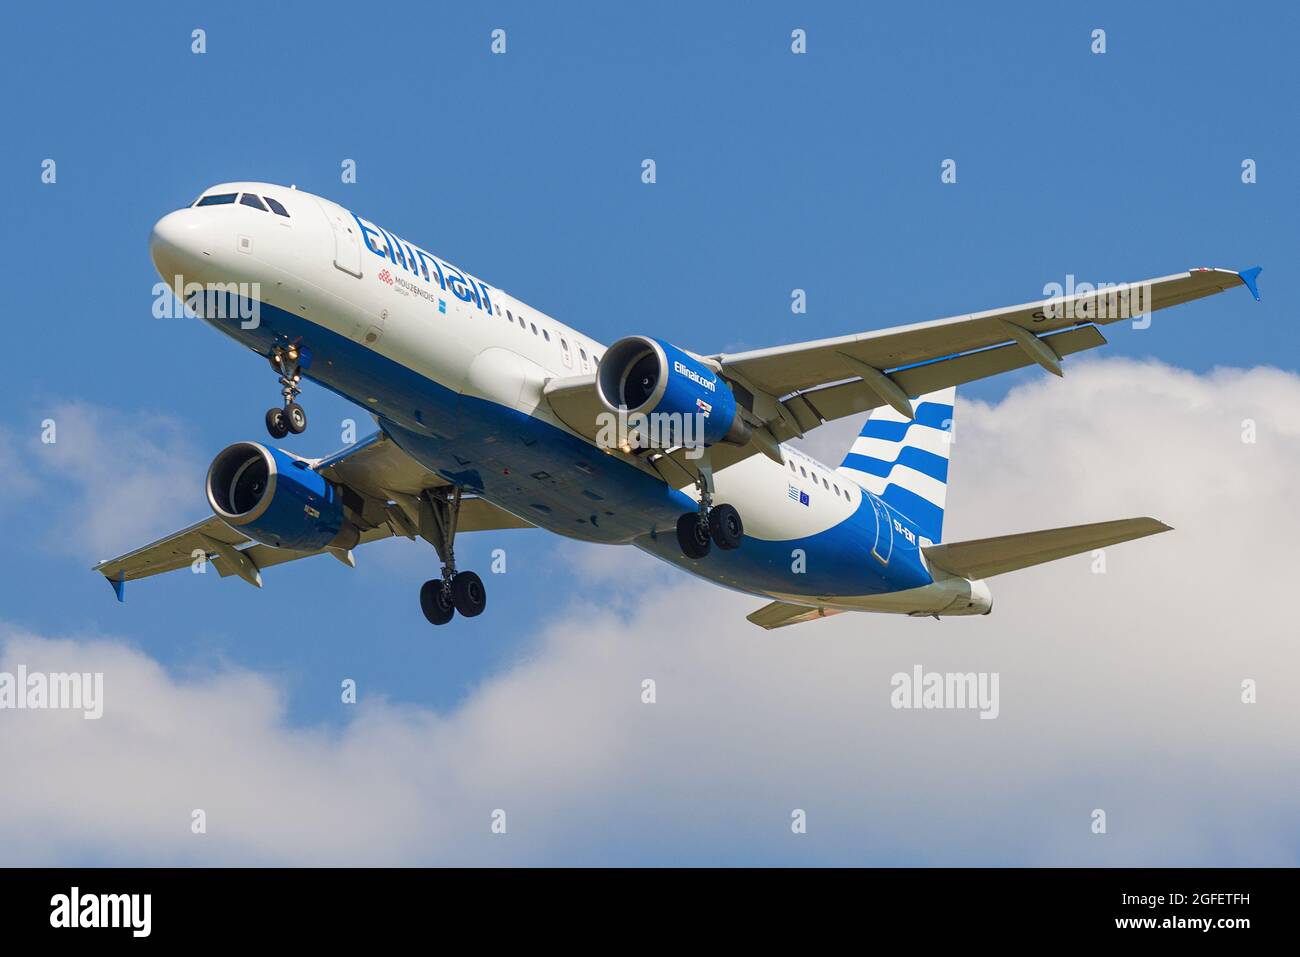 SANKT PETERSBURG, RUSSLAND - 13. MAI 2019: Flugzeug Airbus A320-200 (SX-EMY) der Ellinair-Fluggesellschaften auf der Gleitschirmbahn Stockfoto